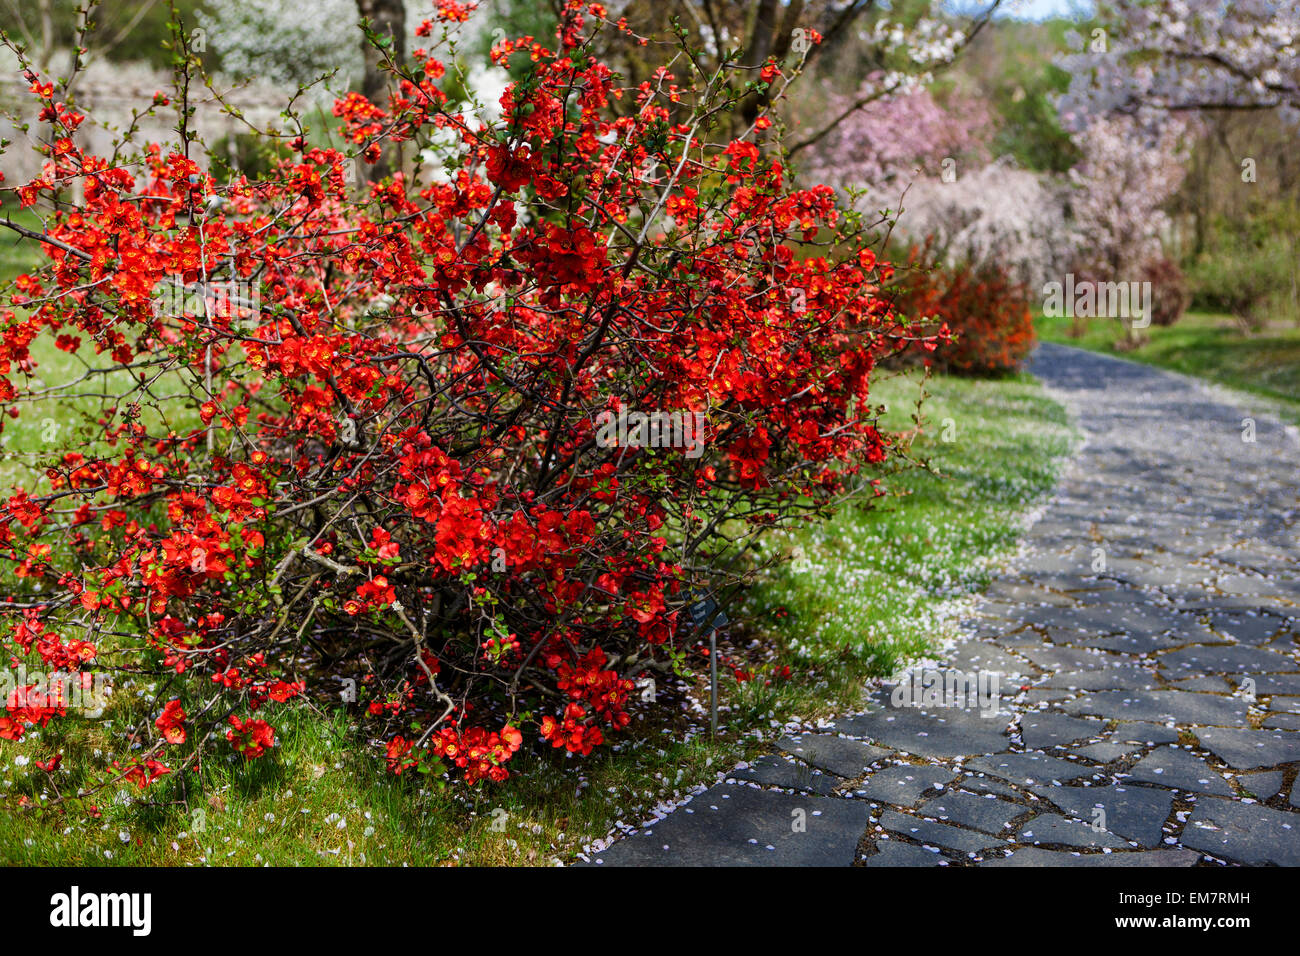 Fioritura della cotogna giapponese Chaenomeles japonica in un sentiero del giardino sotto l'albero dei ciliegi fioritura fioritura fioritura fioritura giardino nel paesaggio primaverile arbusti rossi Foto Stock